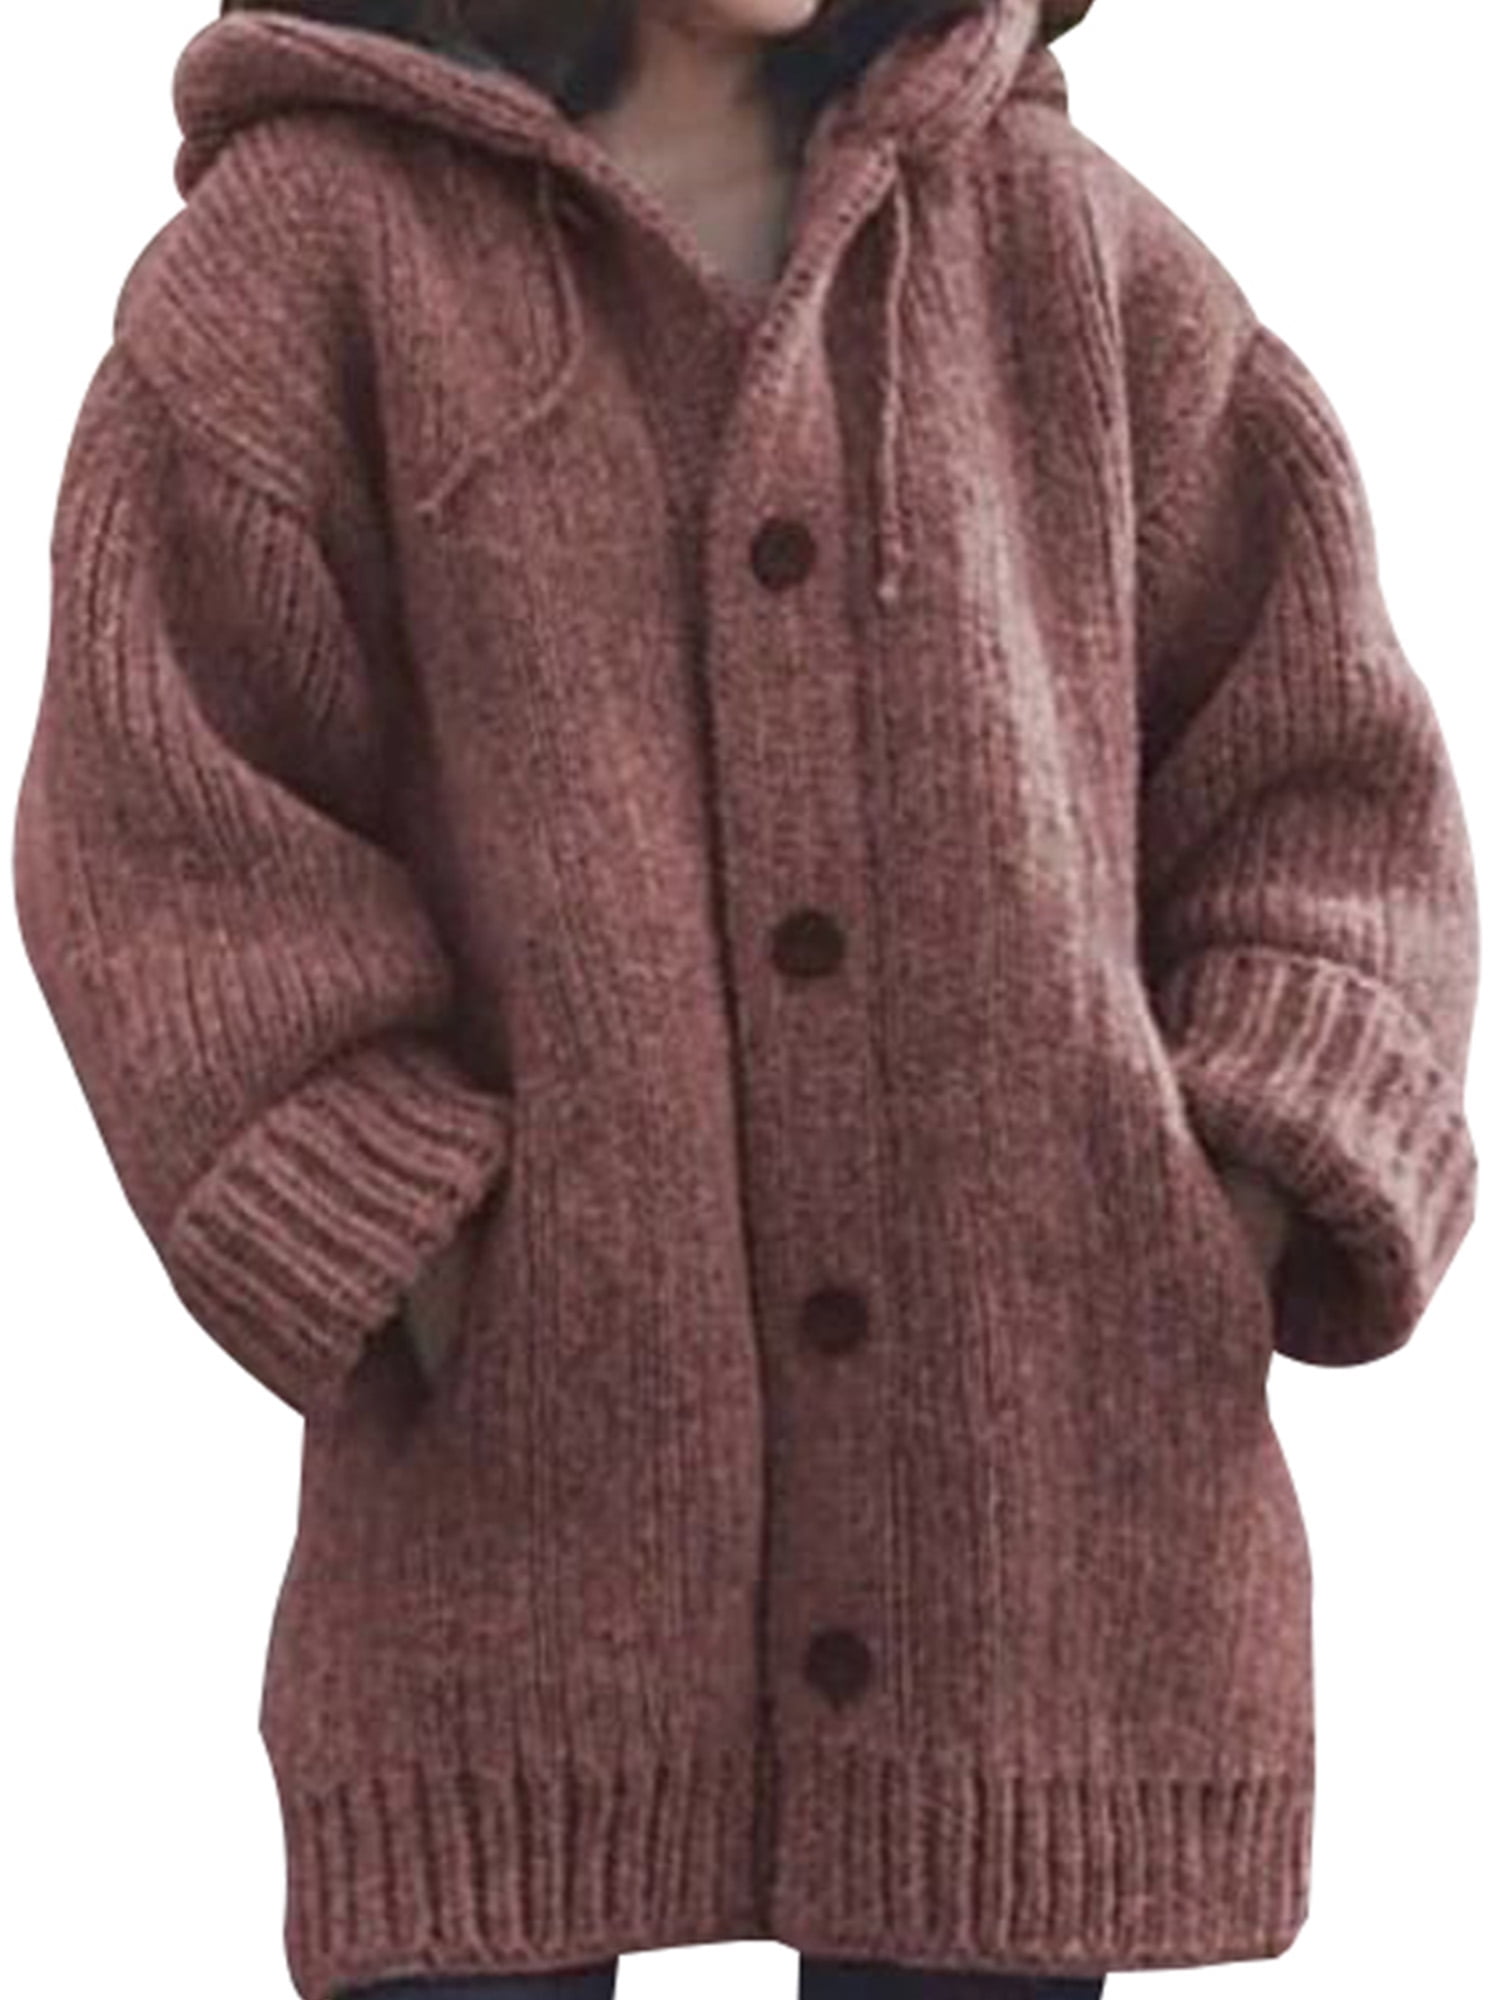 Women Winter Warm Woolen Hooded Coat Long Sleeve Parka Jacket Coat S-5XL 